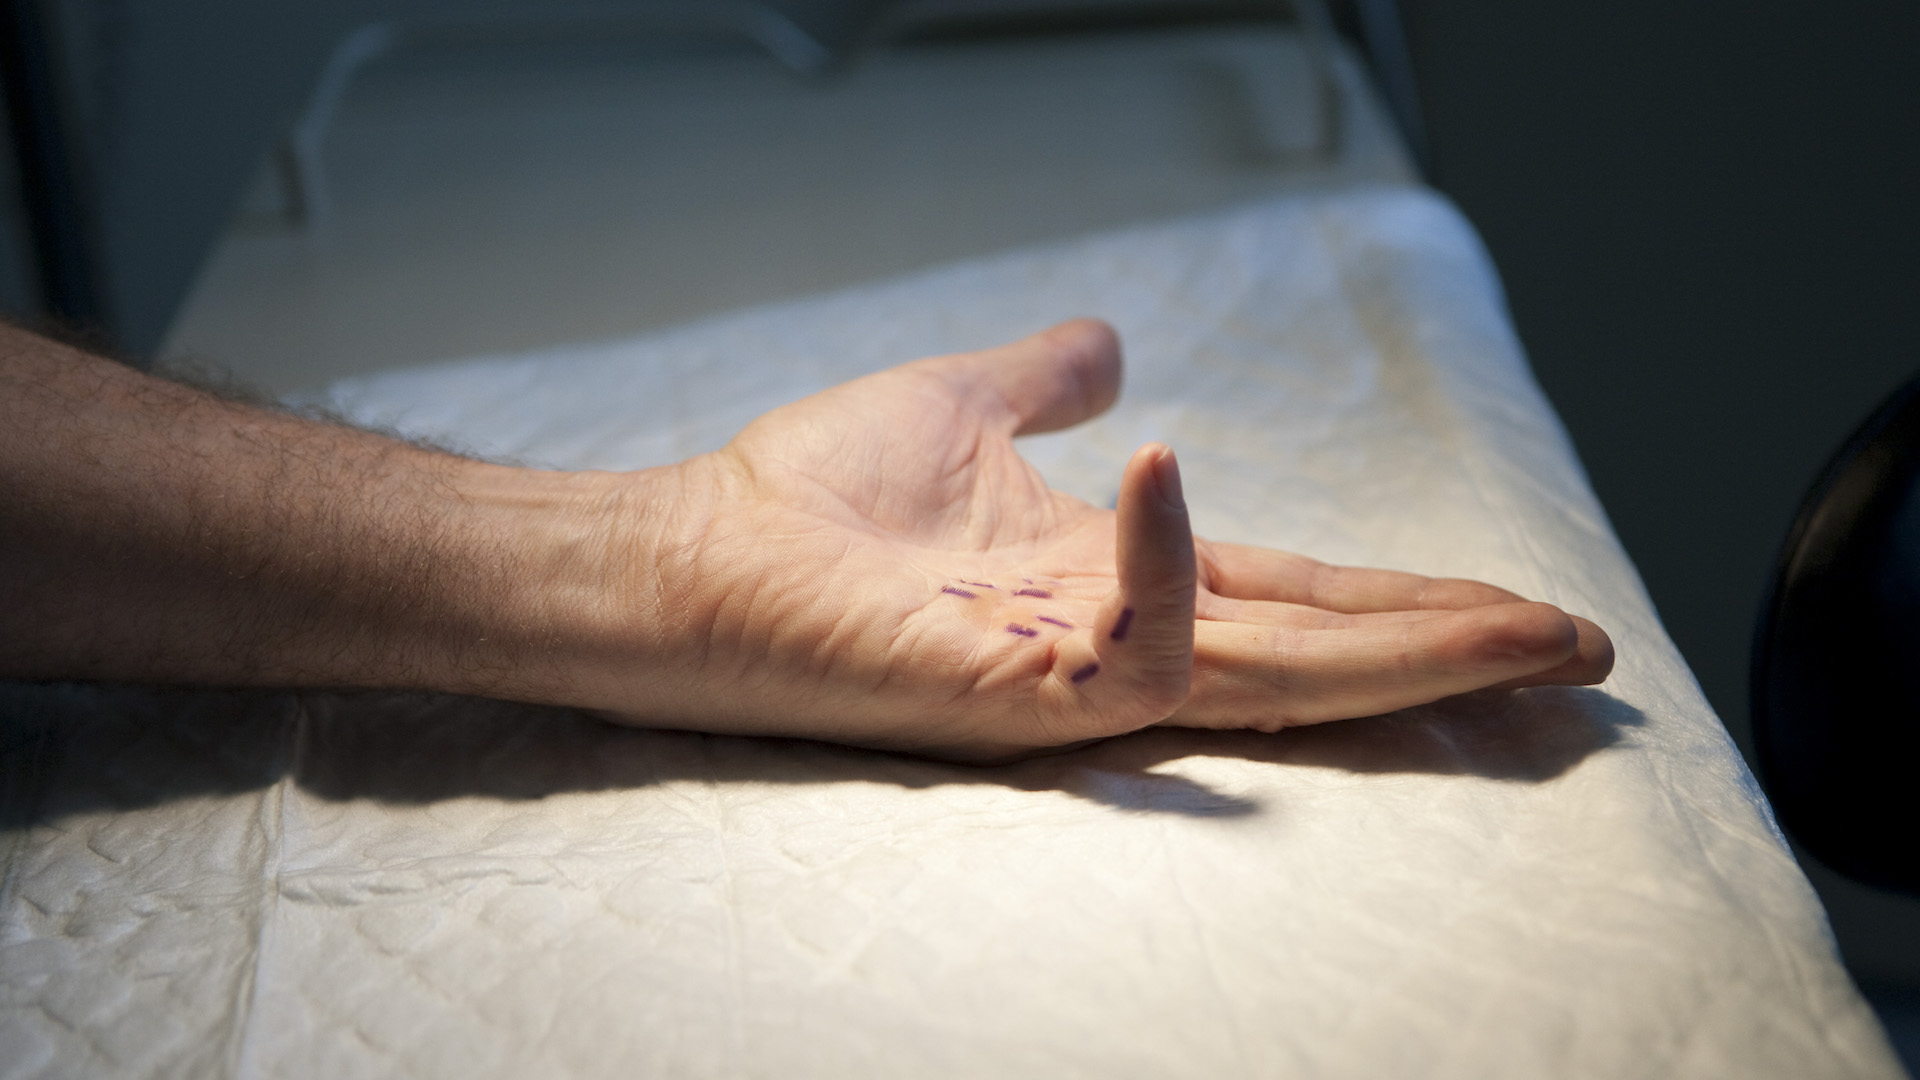 Uma fotografia de uma mão com doença de Dupuytren, causando contração do dedo mínimo.